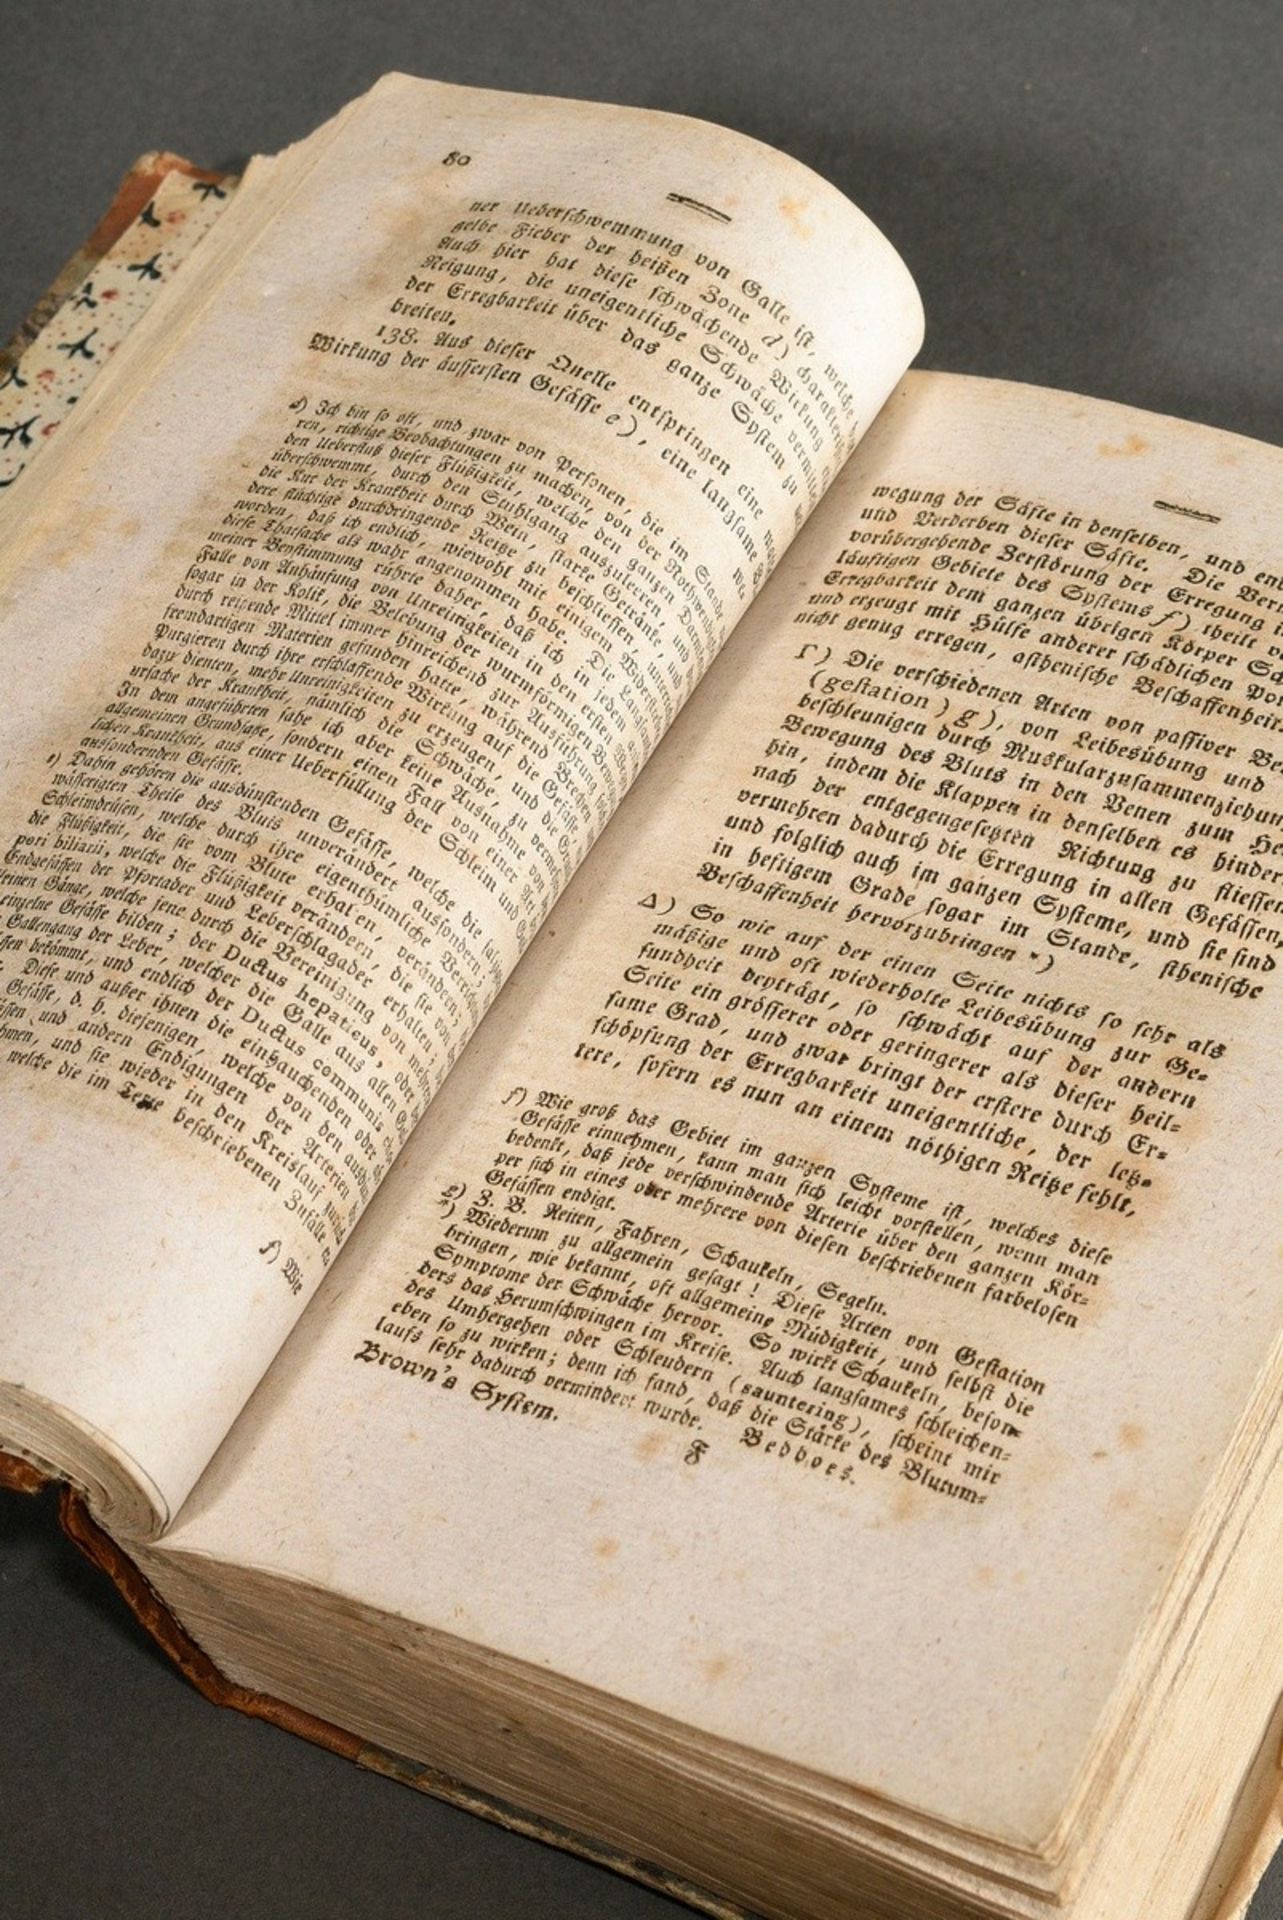 Volume "John Brown's System der Heilkunde", Vienna 1807, 3rd edition, half leather binding, 536 p., - Image 4 of 5